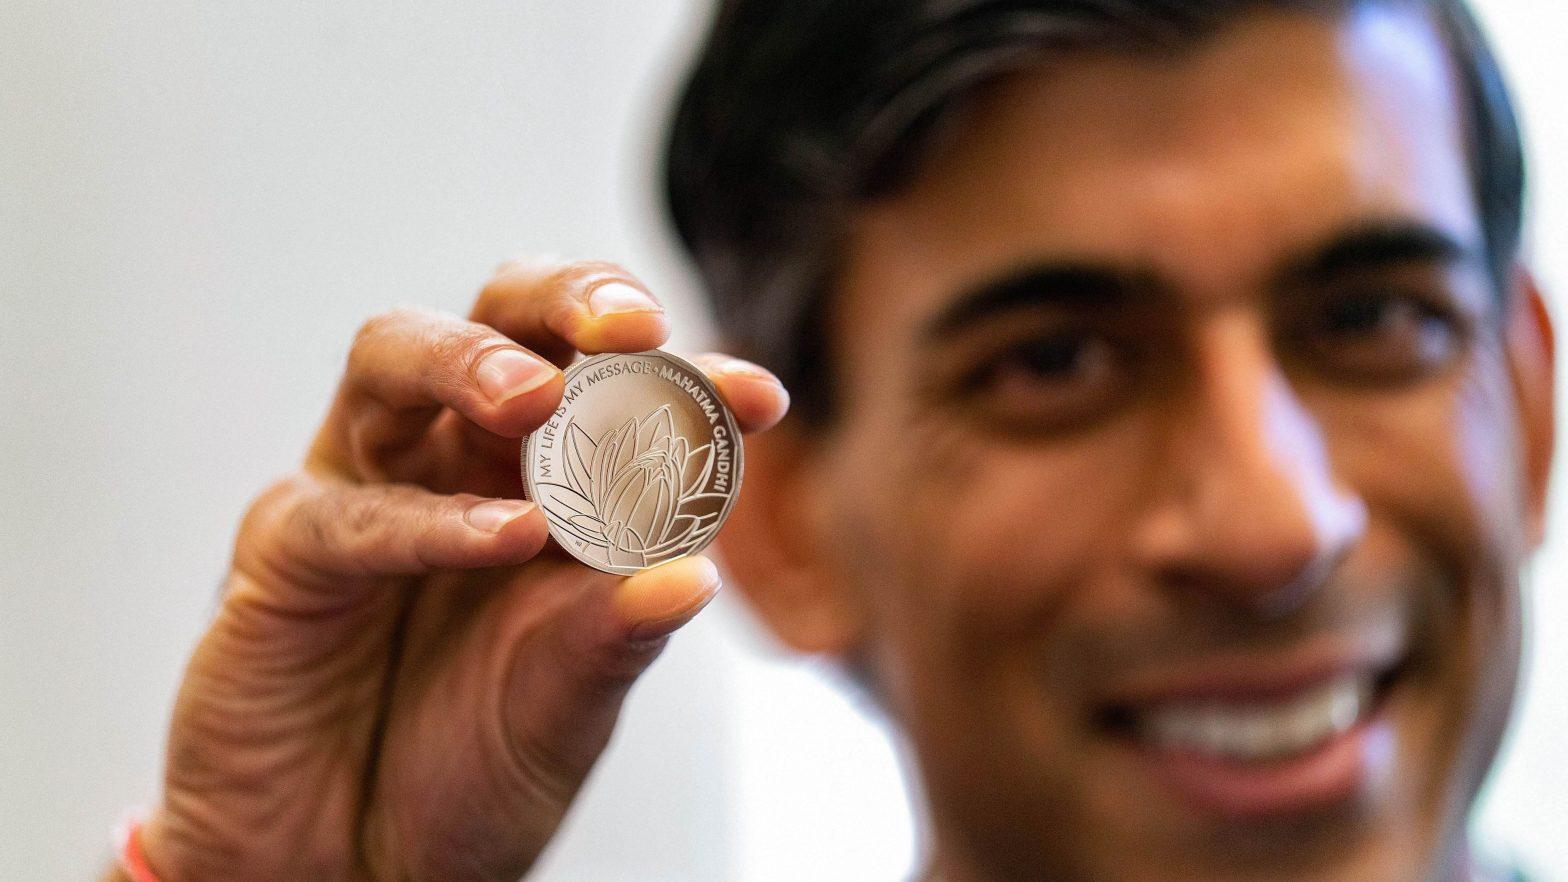 UK unveils commemorative £5 coin celebrating legacy of Mahatma Gandhi